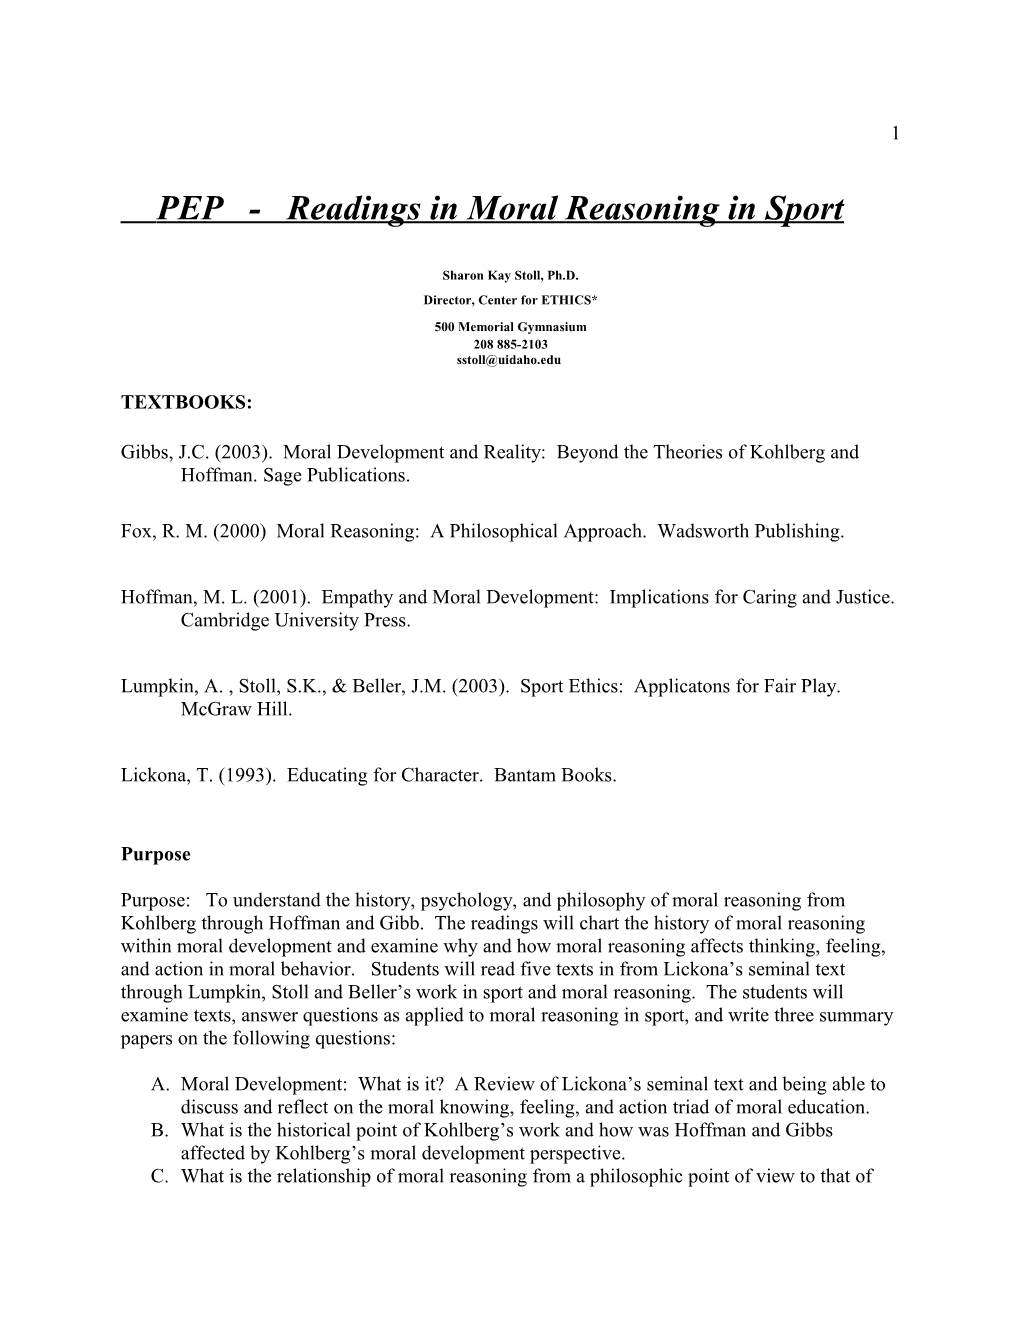 PEP - Readings in Moral Reasoning in Sport